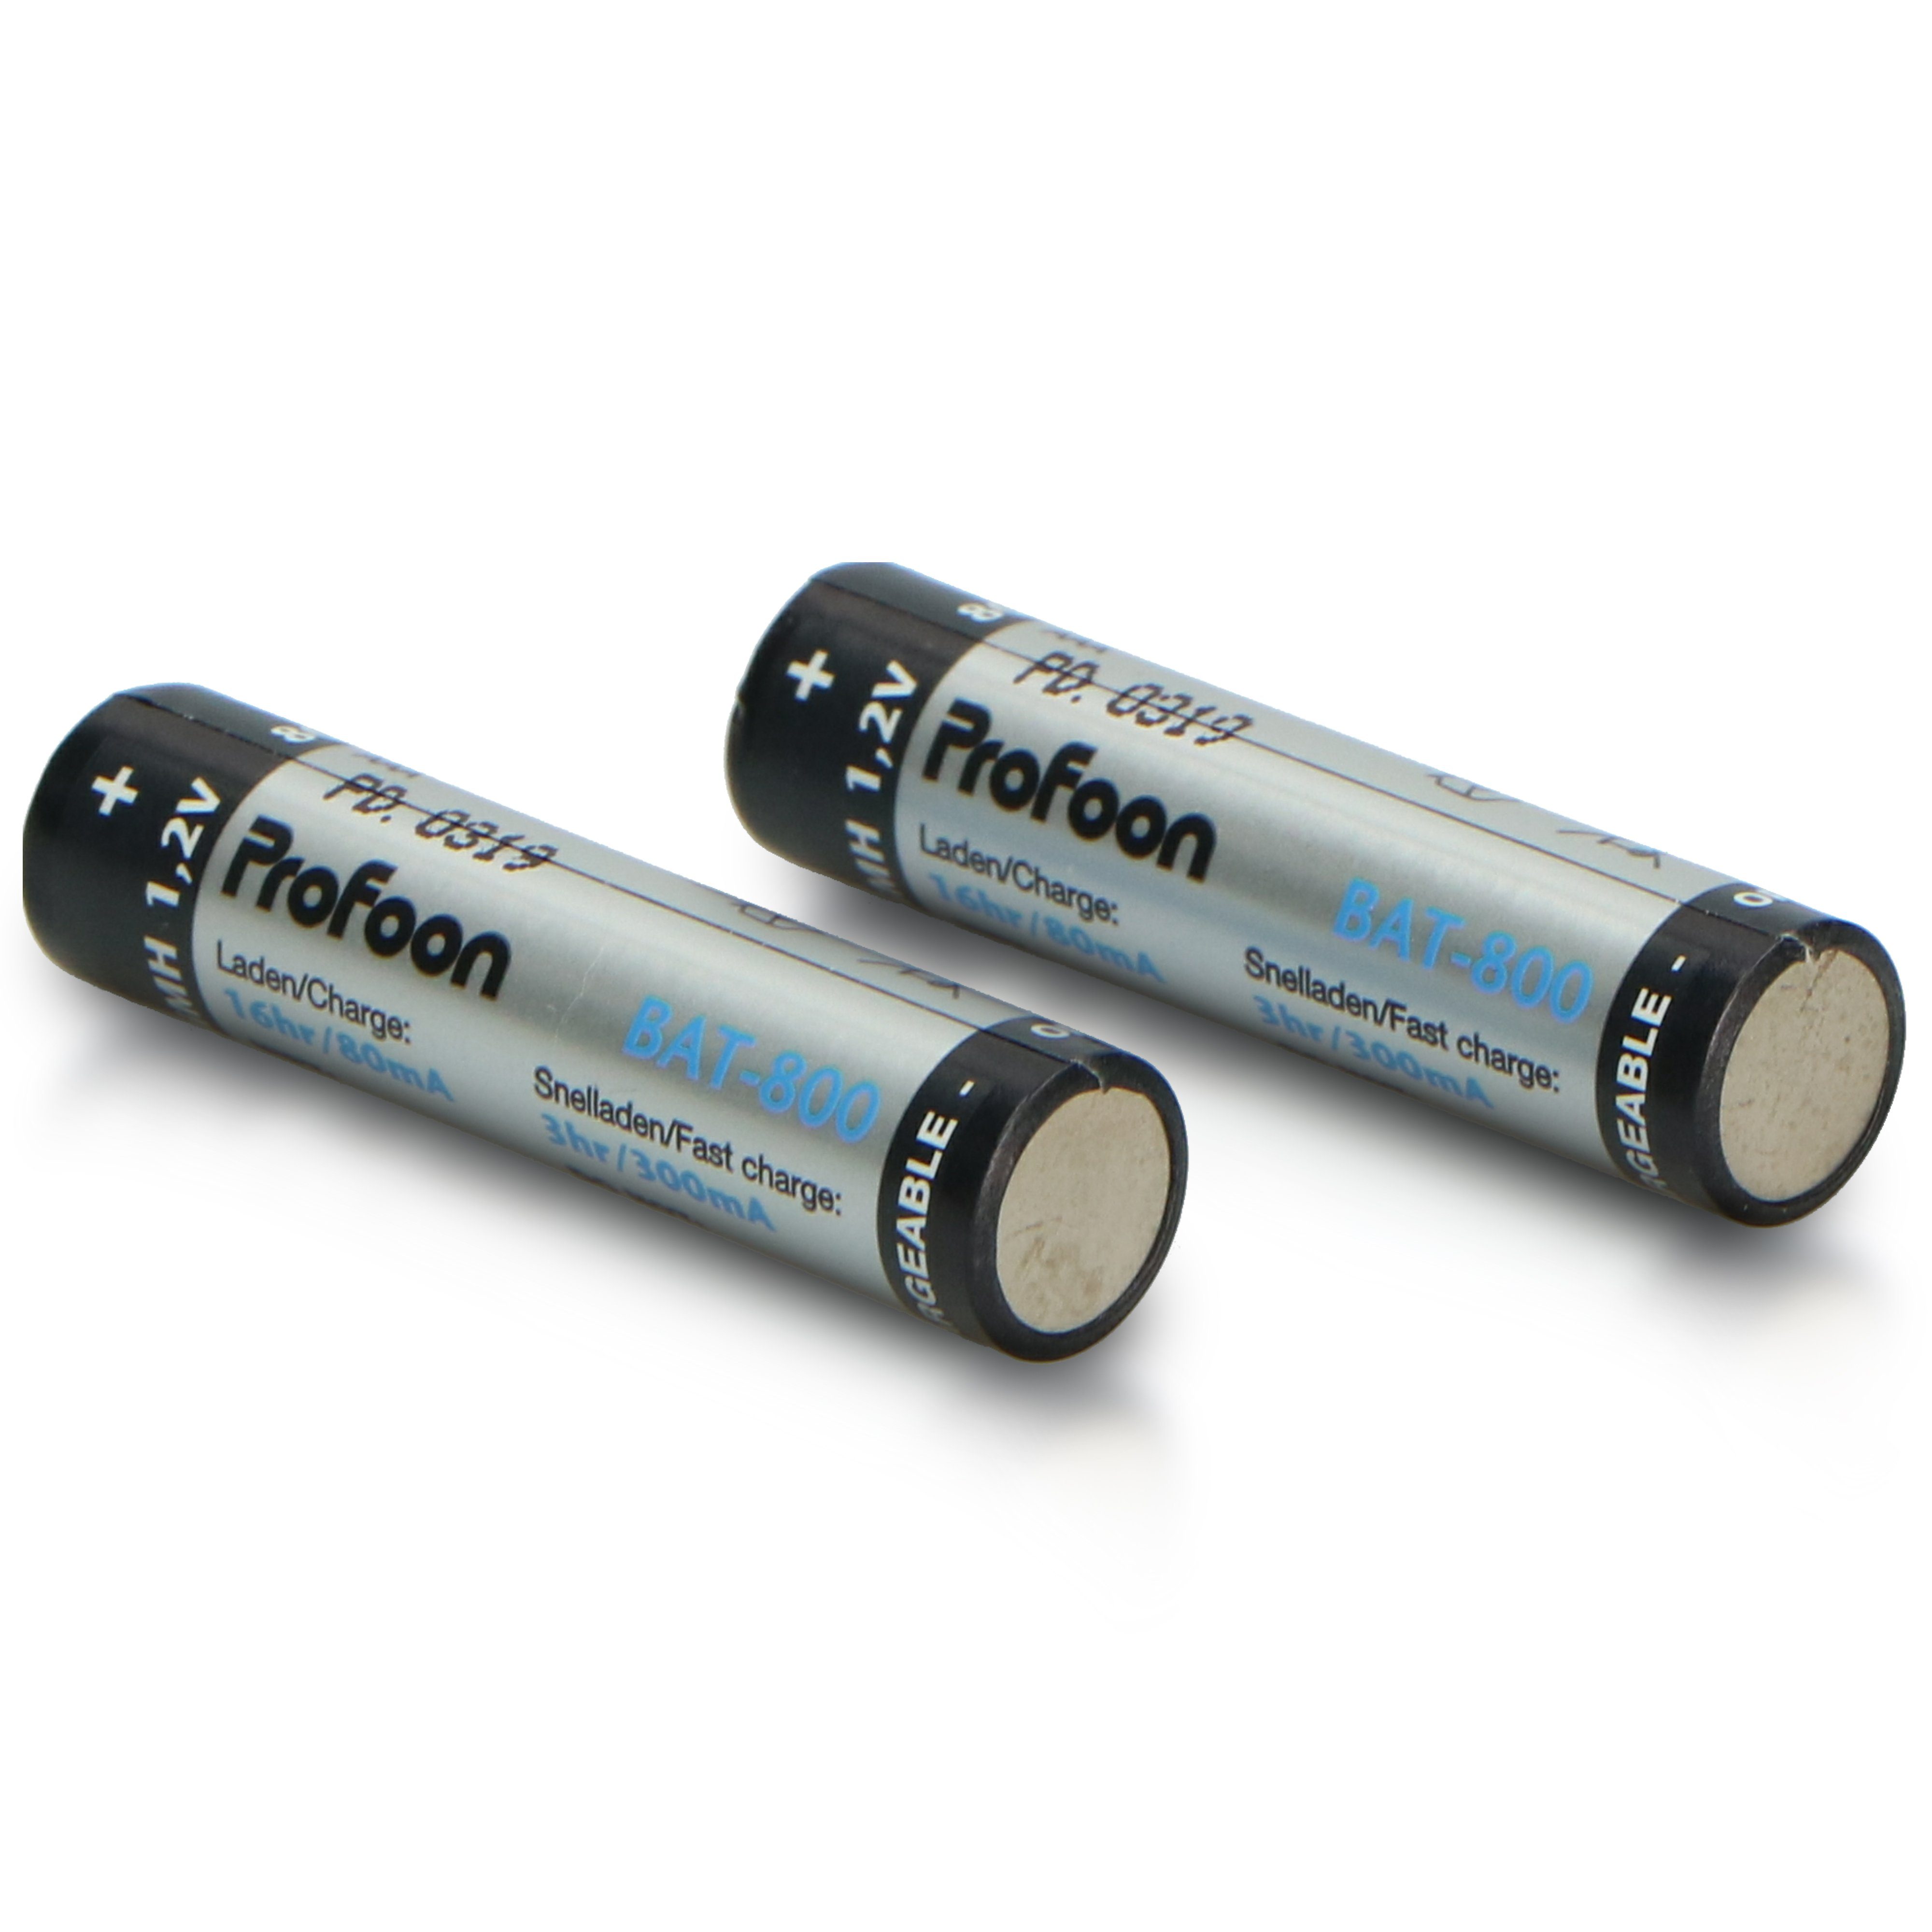 St) BAT-800 Batterie, (2 Profoon